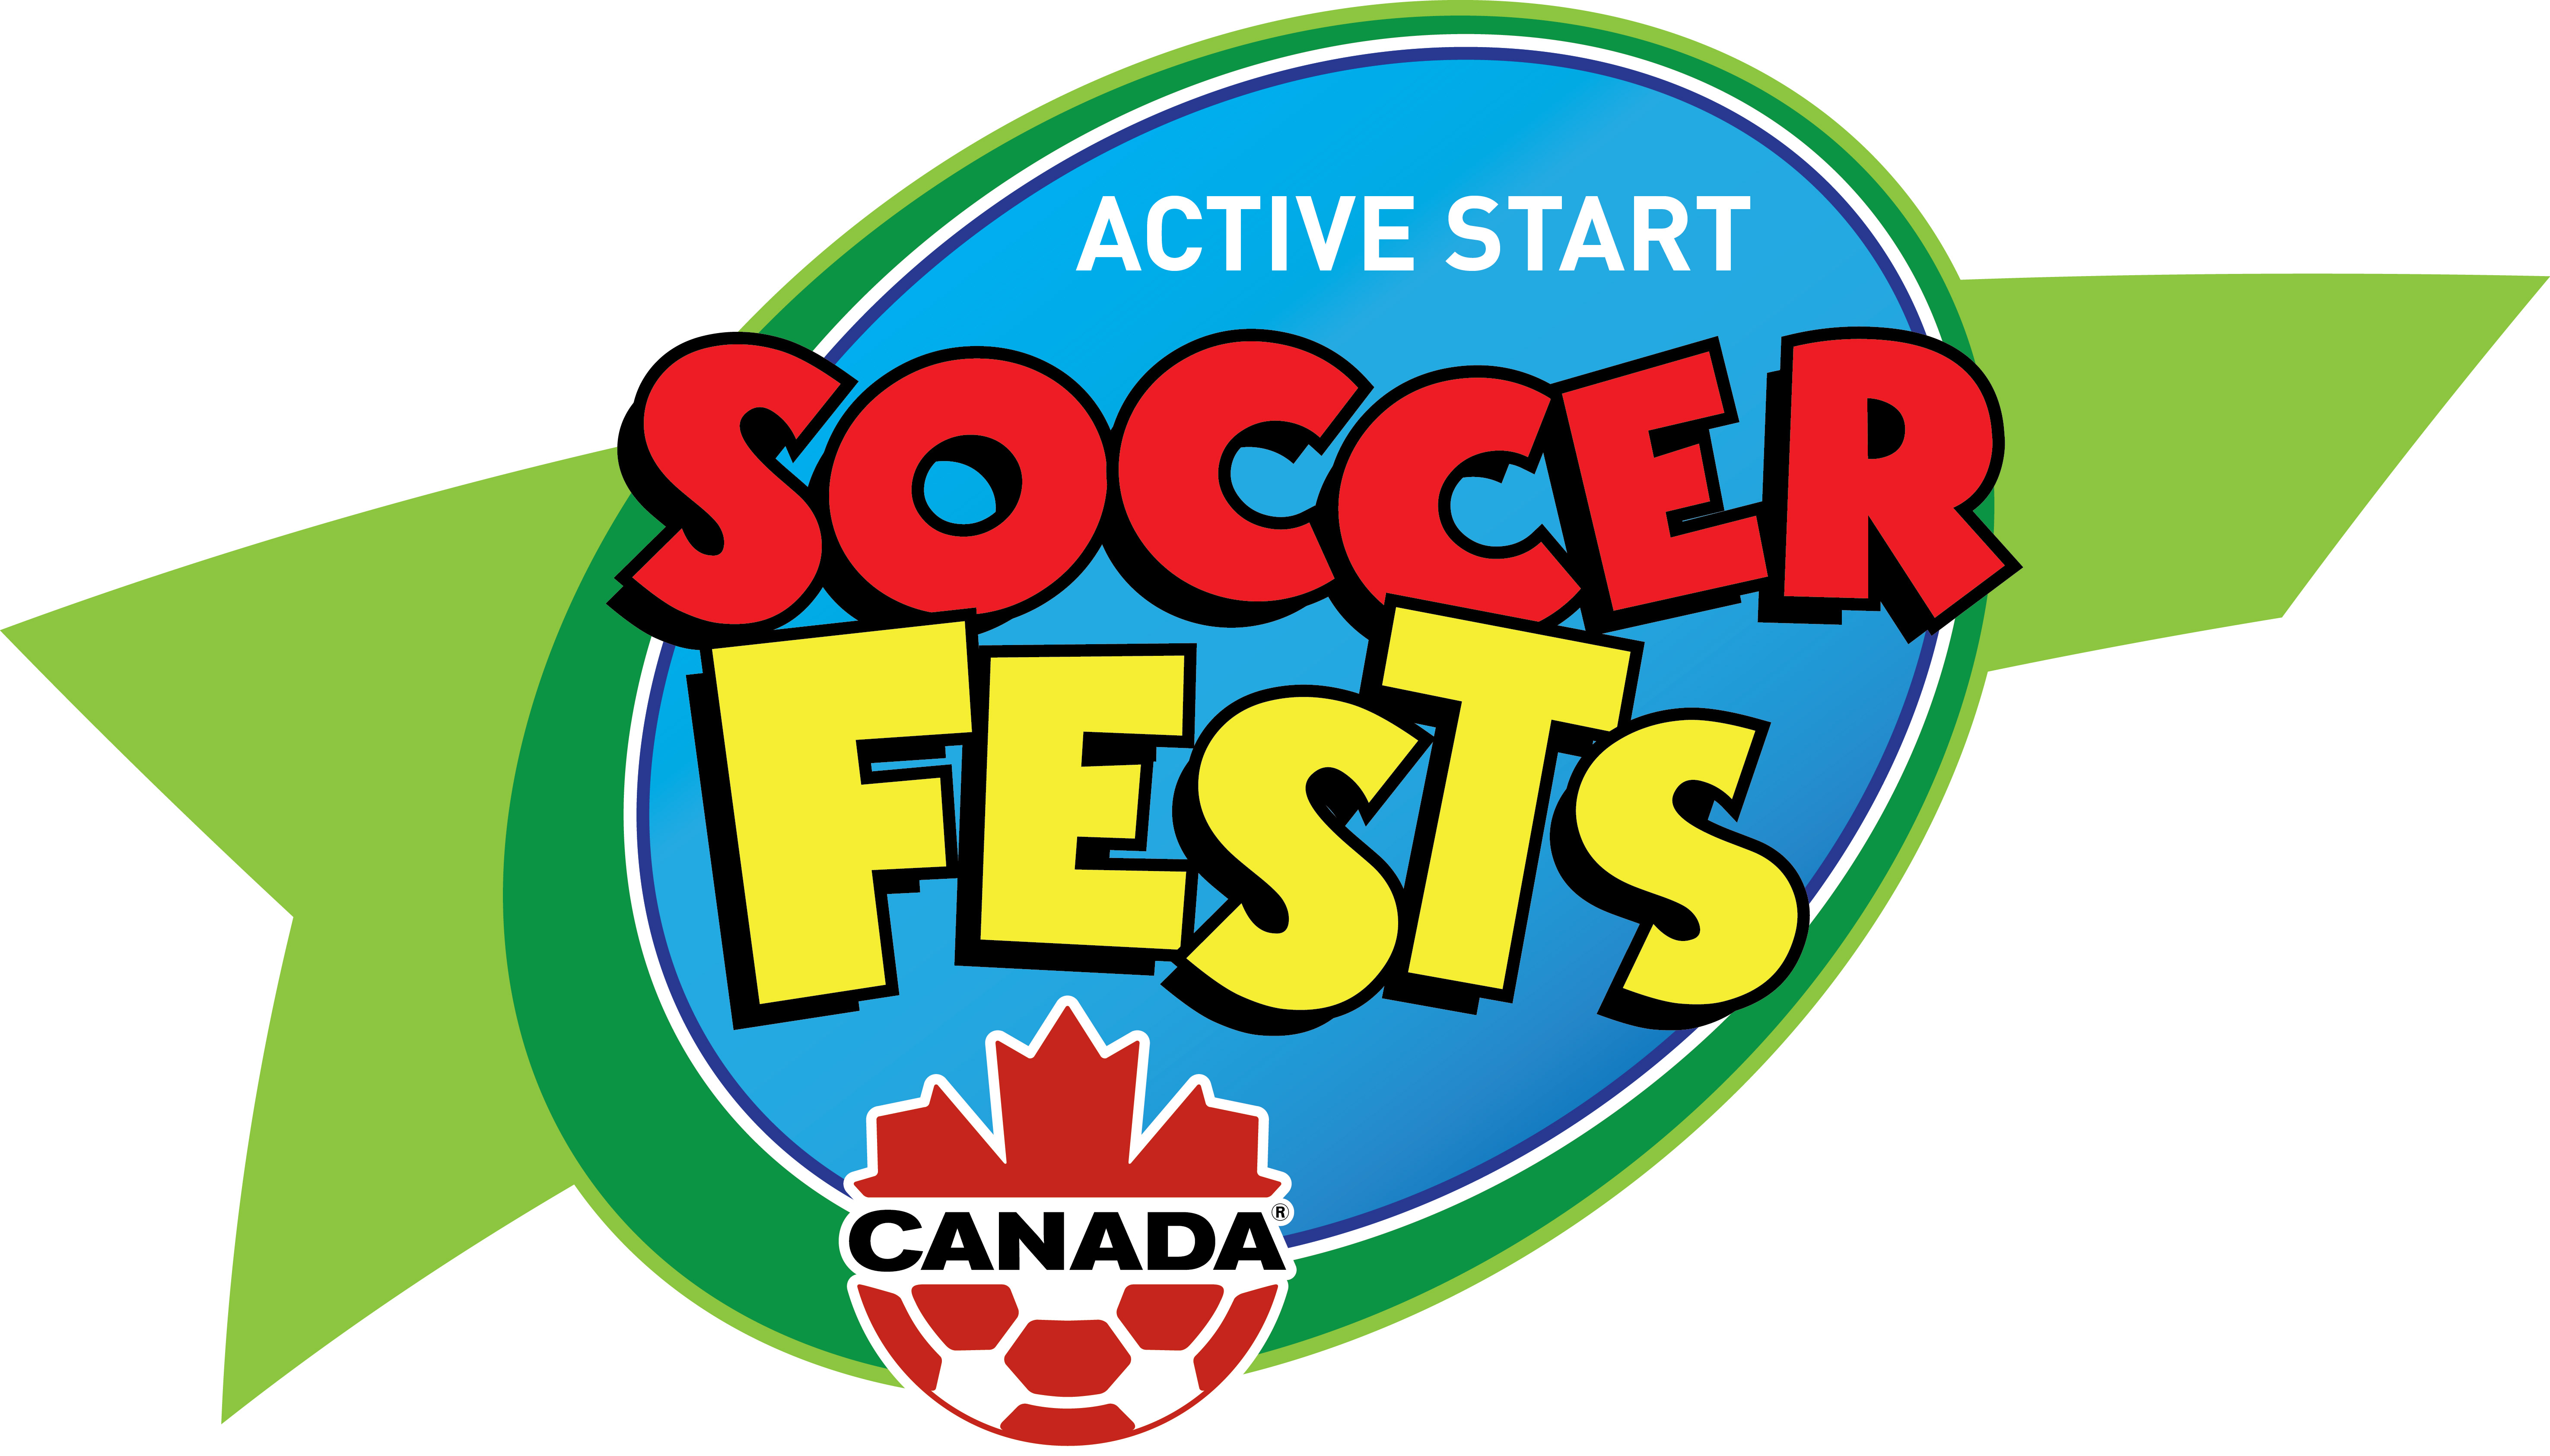 Active Start Soccer Fests